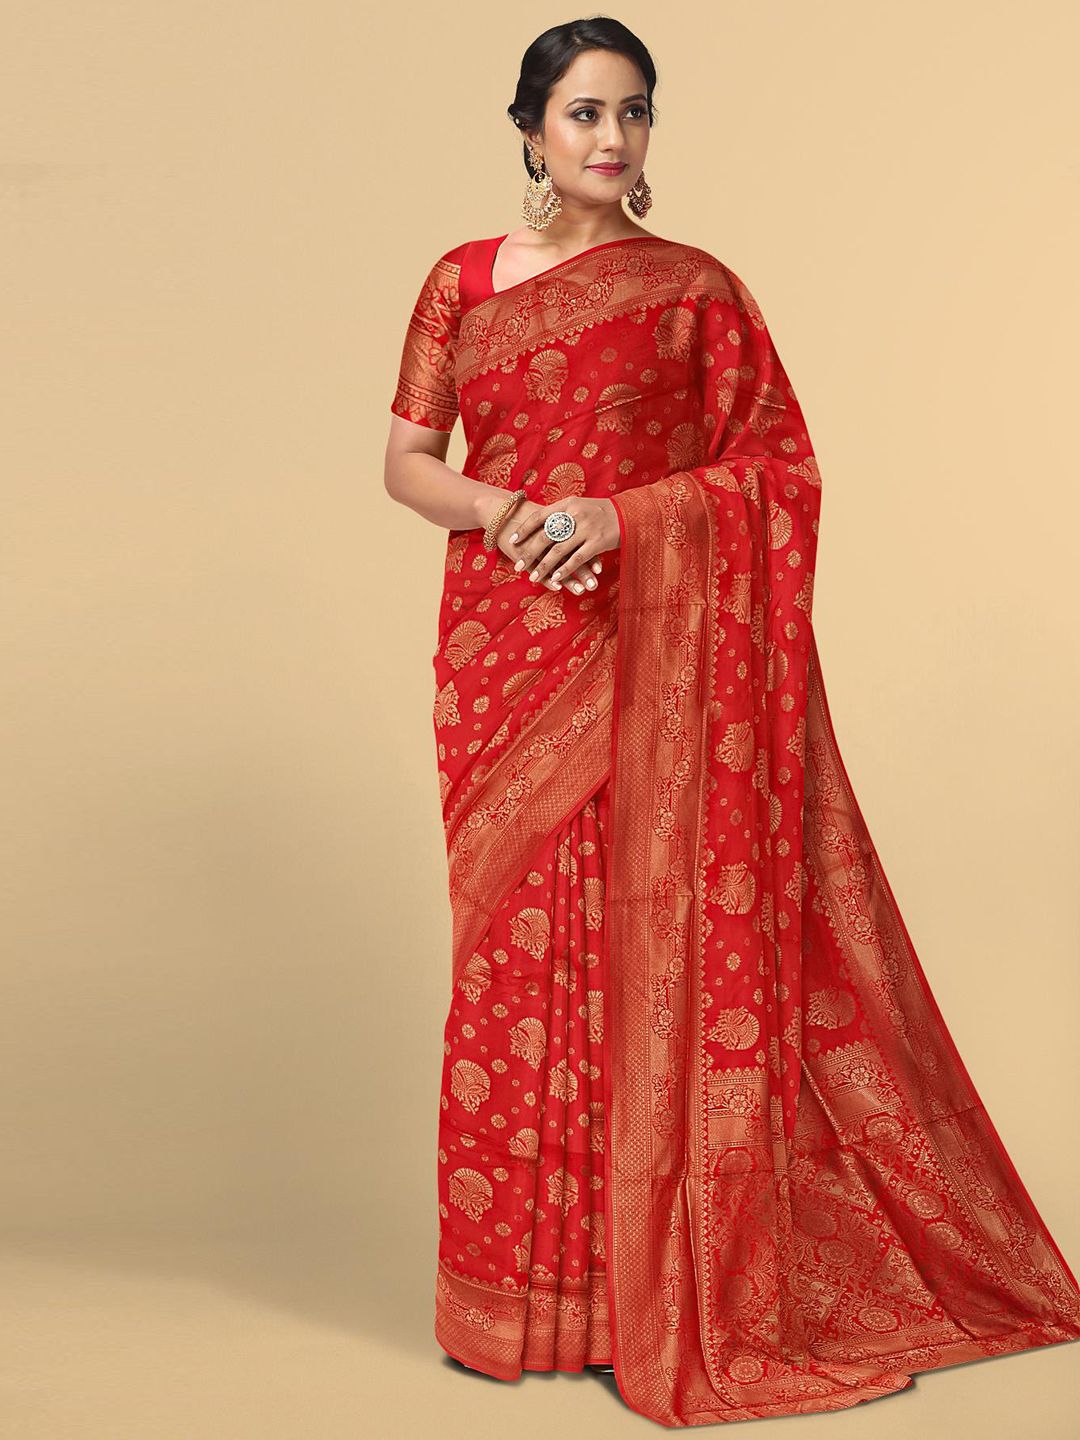 Kalamandir Red & Gold-Toned Floral Silk Blend Saree Price in India